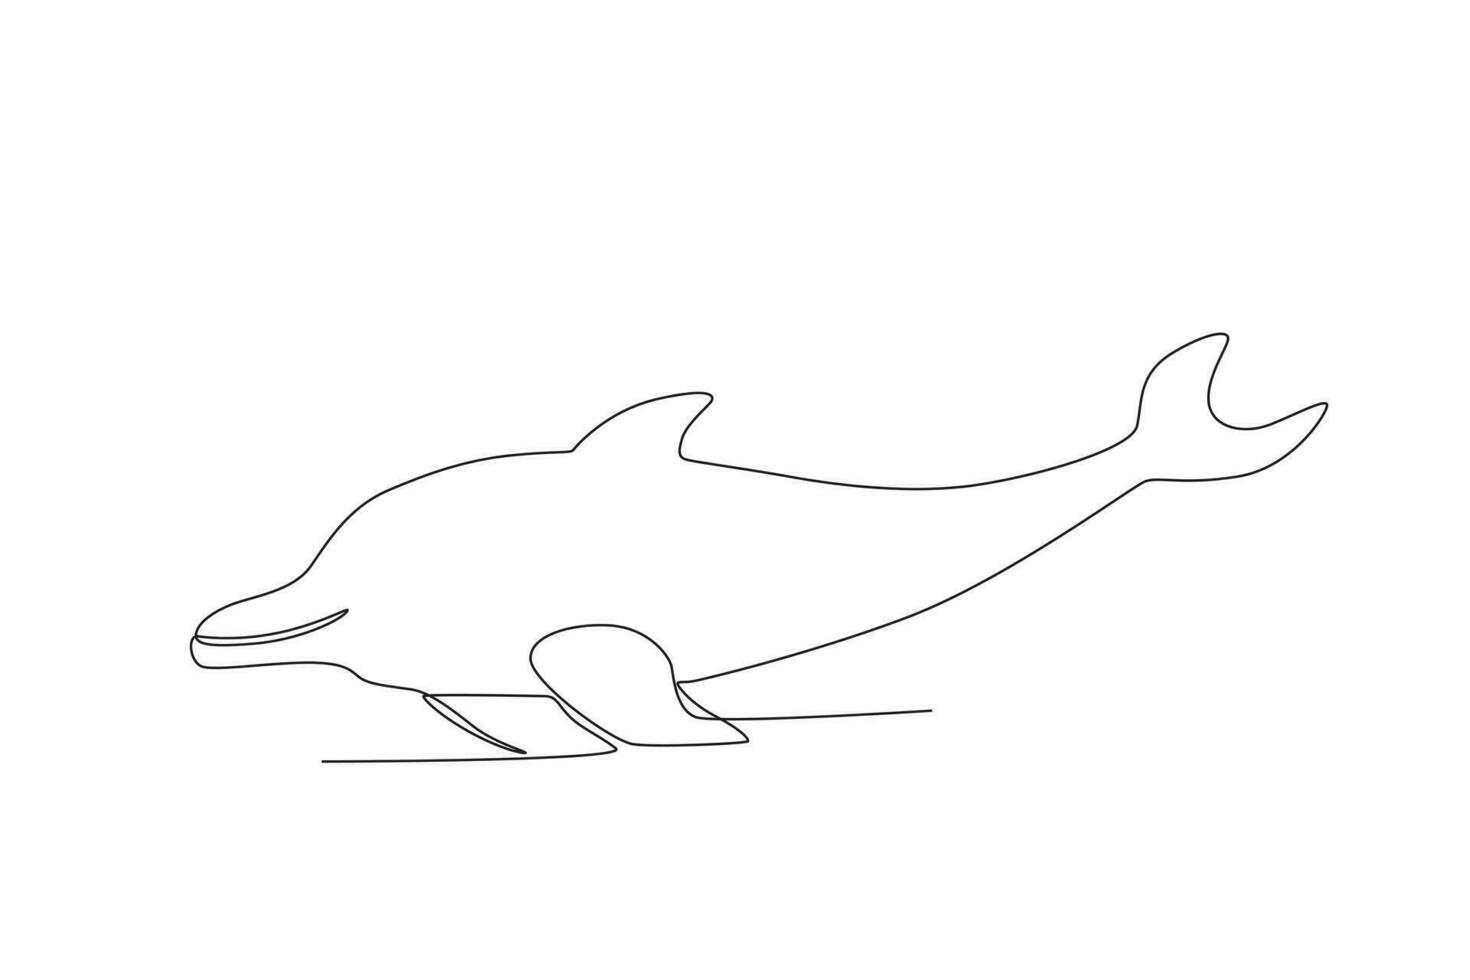 Single einer Linie Zeichnung von ein Delfin. kontinuierlich Linie zeichnen Design Grafik Vektor Illustration.